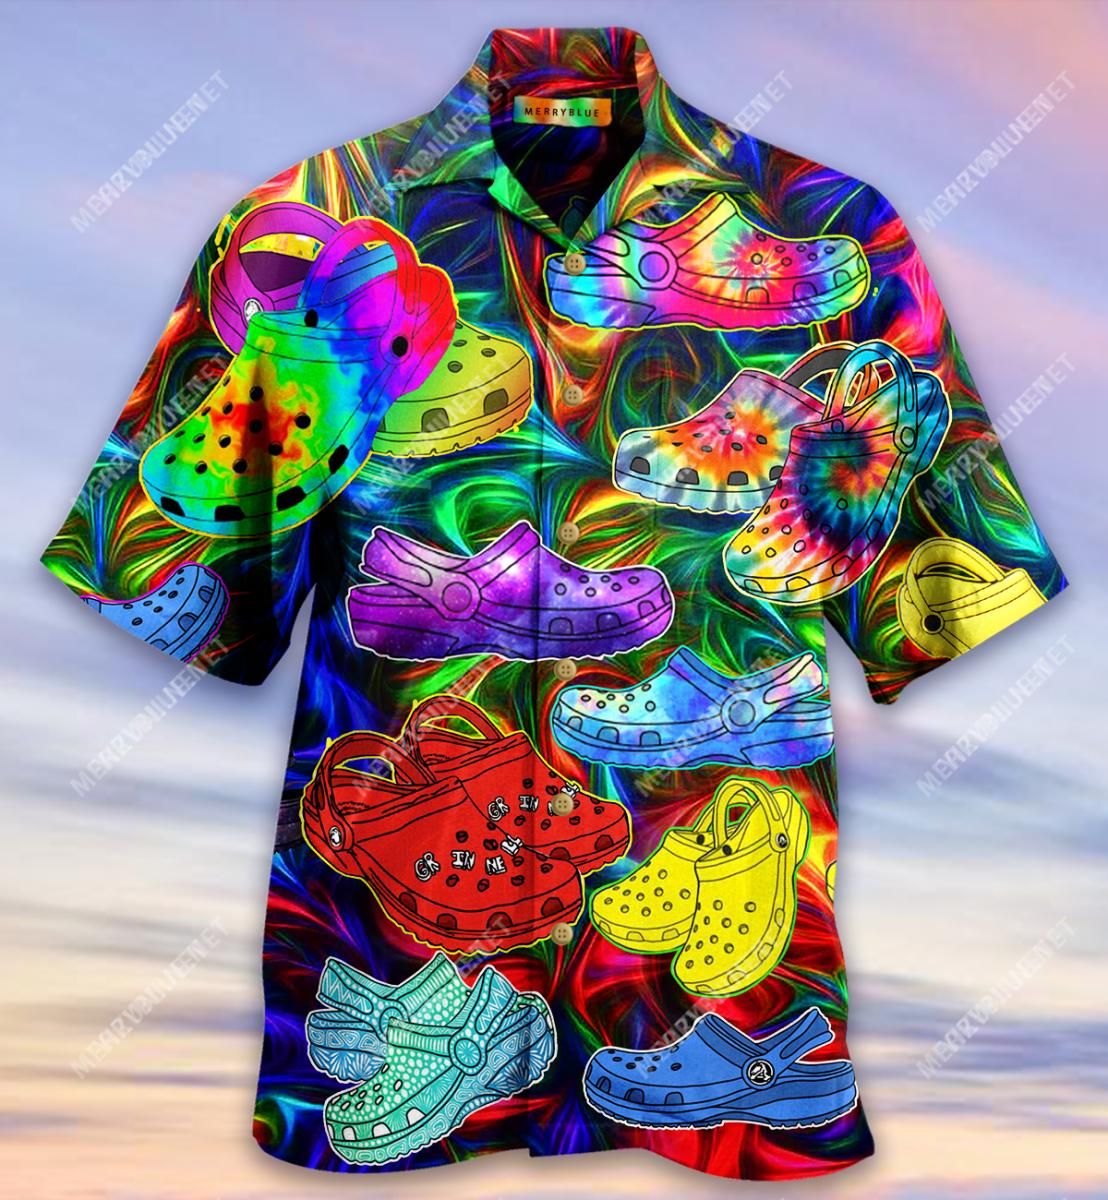 If You Ain'T Crocin' You Ain'T Rockin' Aloha Hawaiian Shirt Colorful Short Sleeve Summer Beach Casual Shirt For Men And Women